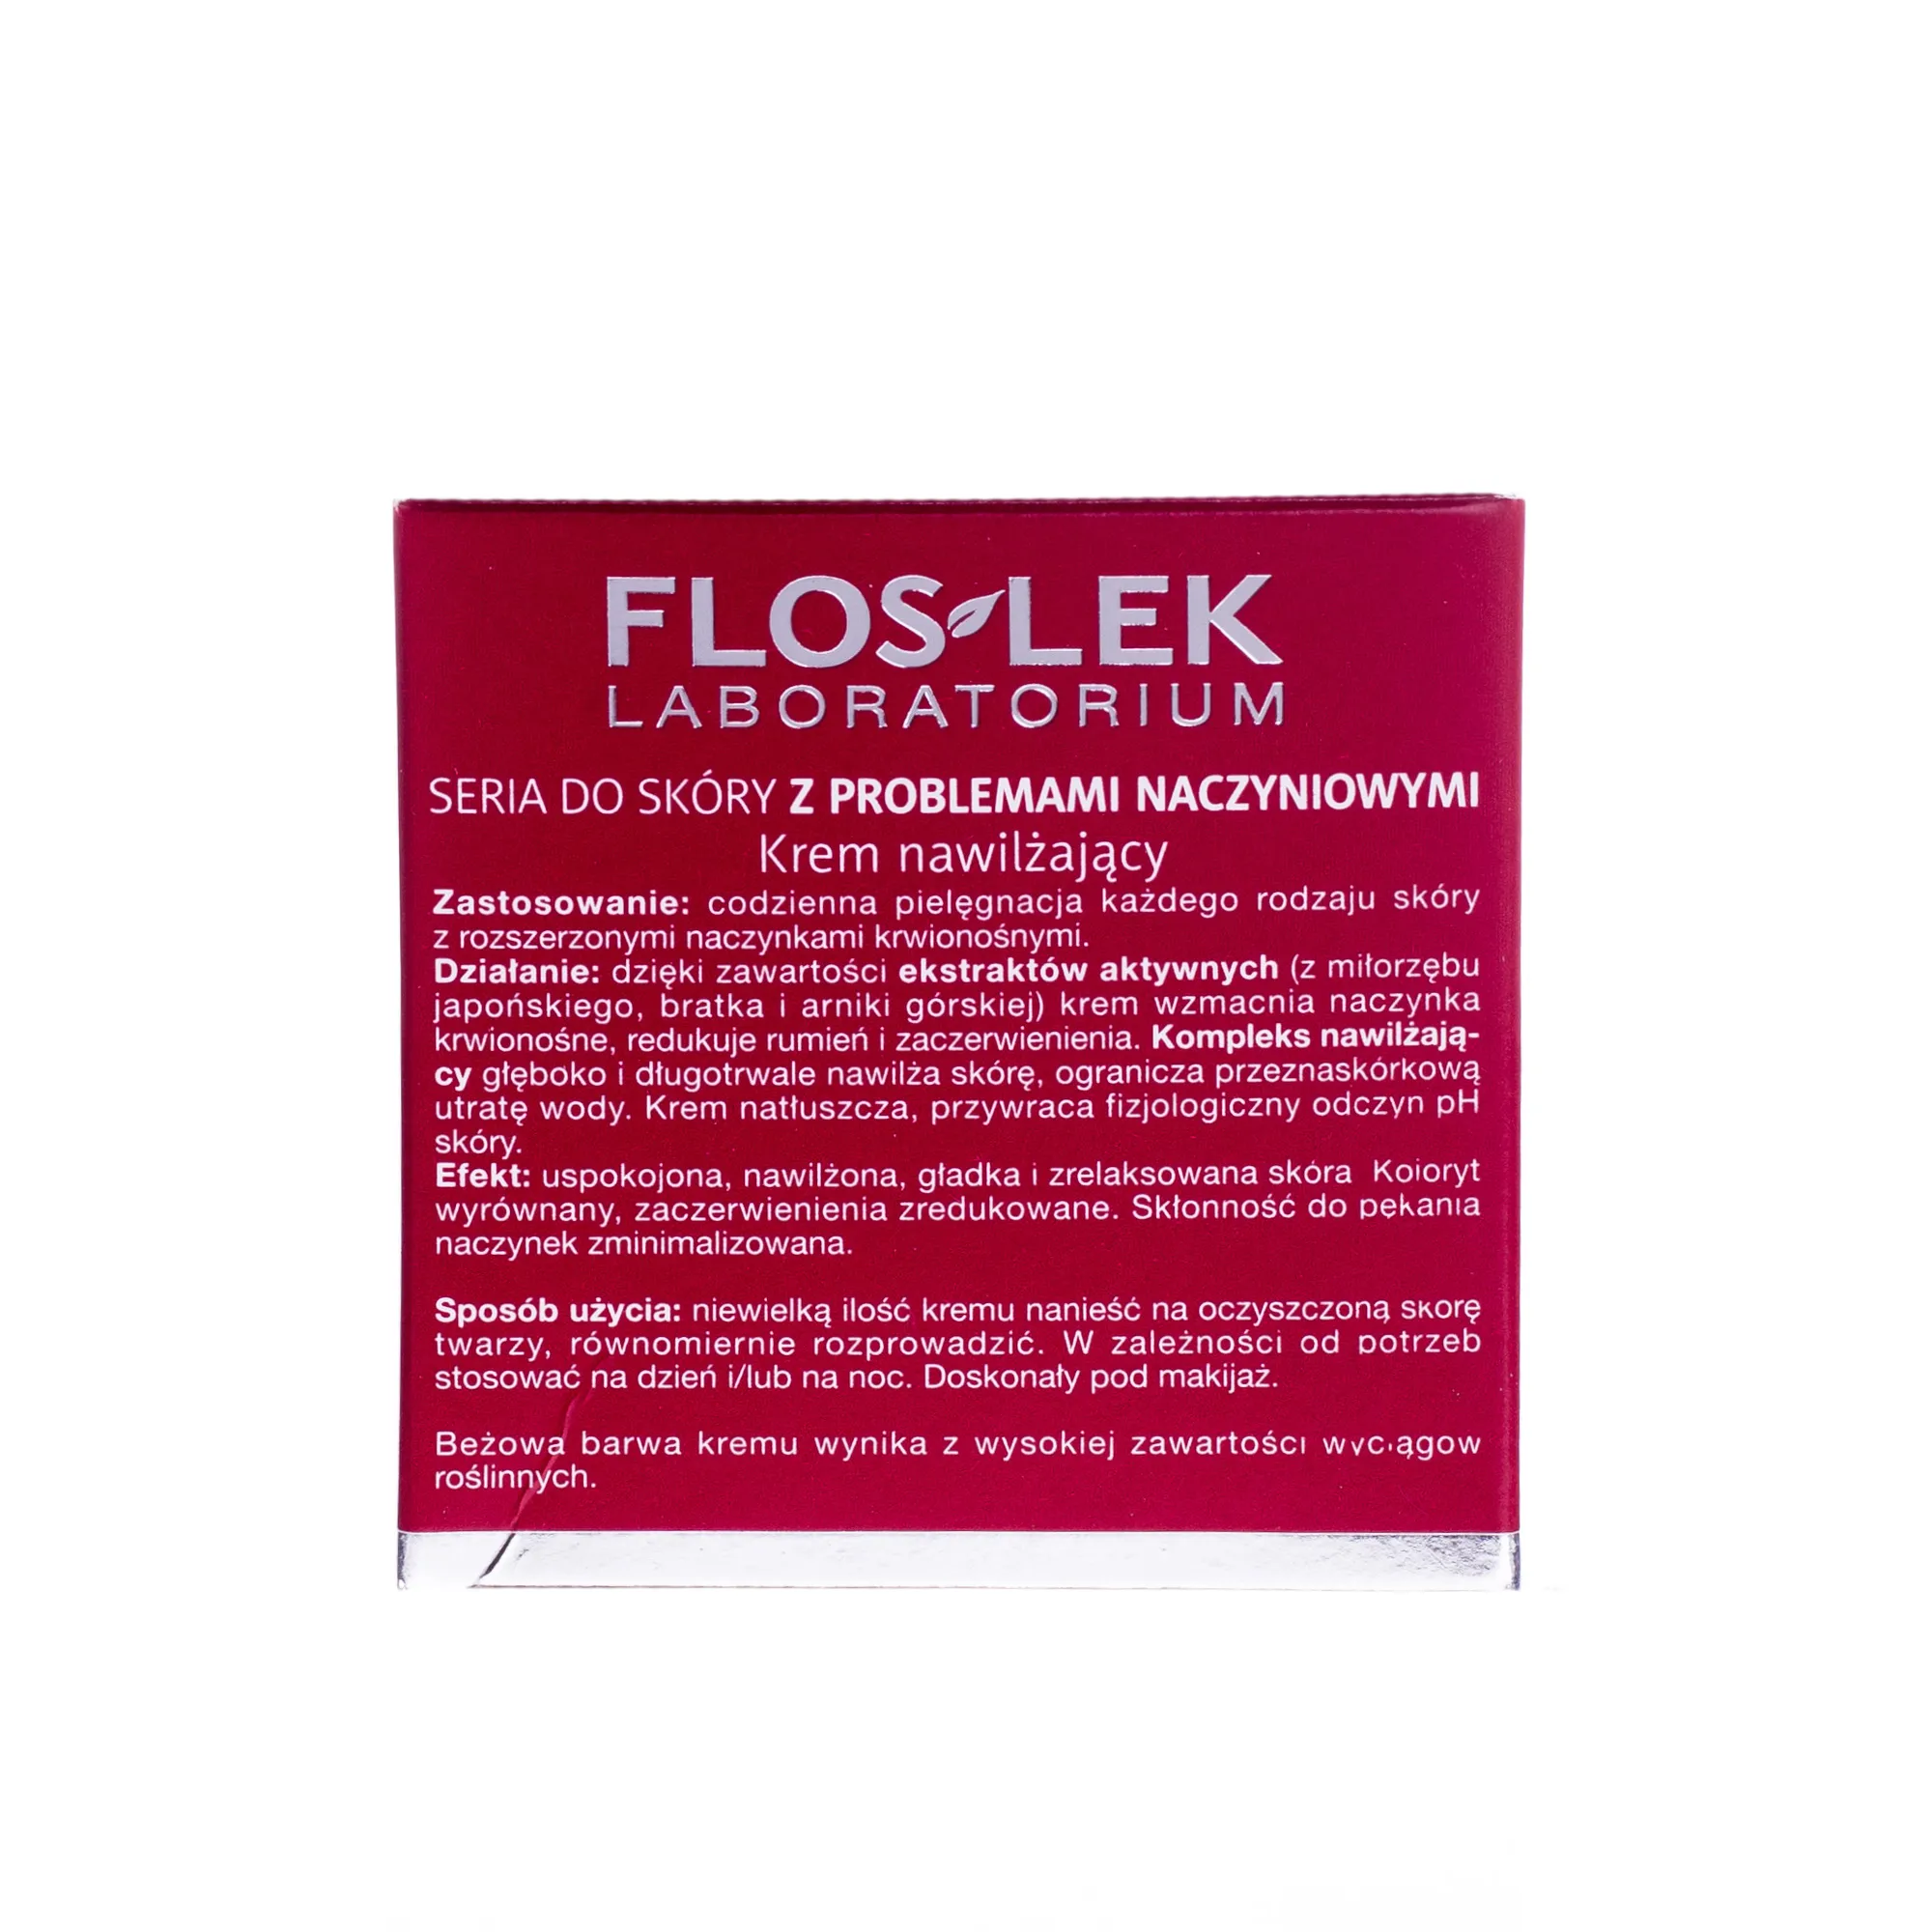 Flos-lek Laboratorium, krem nawilżający do cery z problemami naczyniowymi, 50 ml 